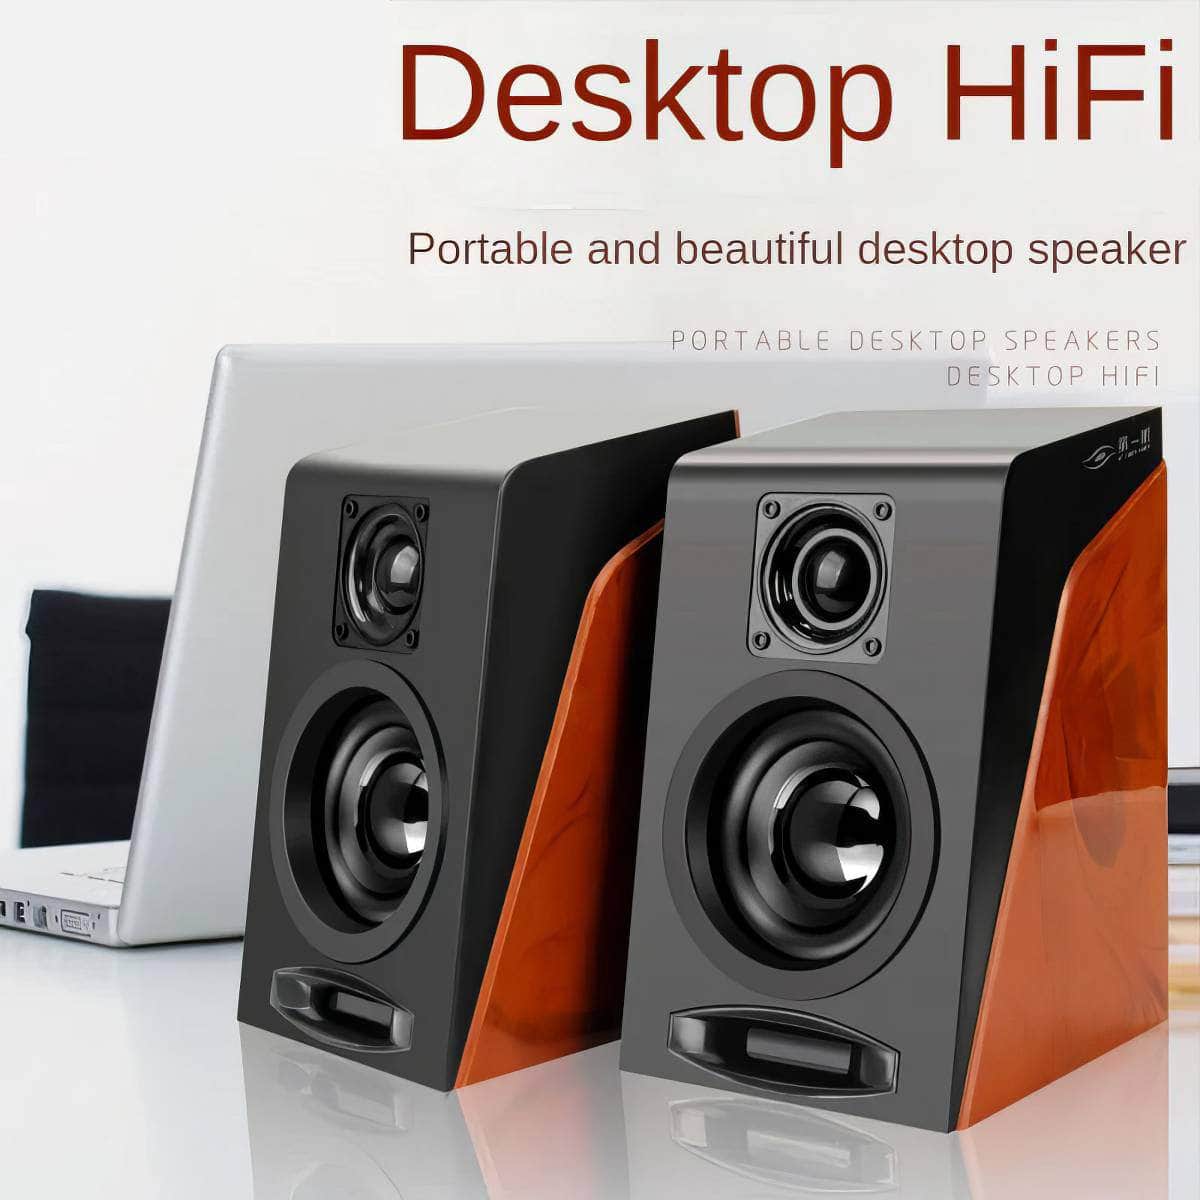 IHOYI 3.5mm USB Speakers: Wired HIFI Mini Stereo Subwoofer IHOYI Speakers